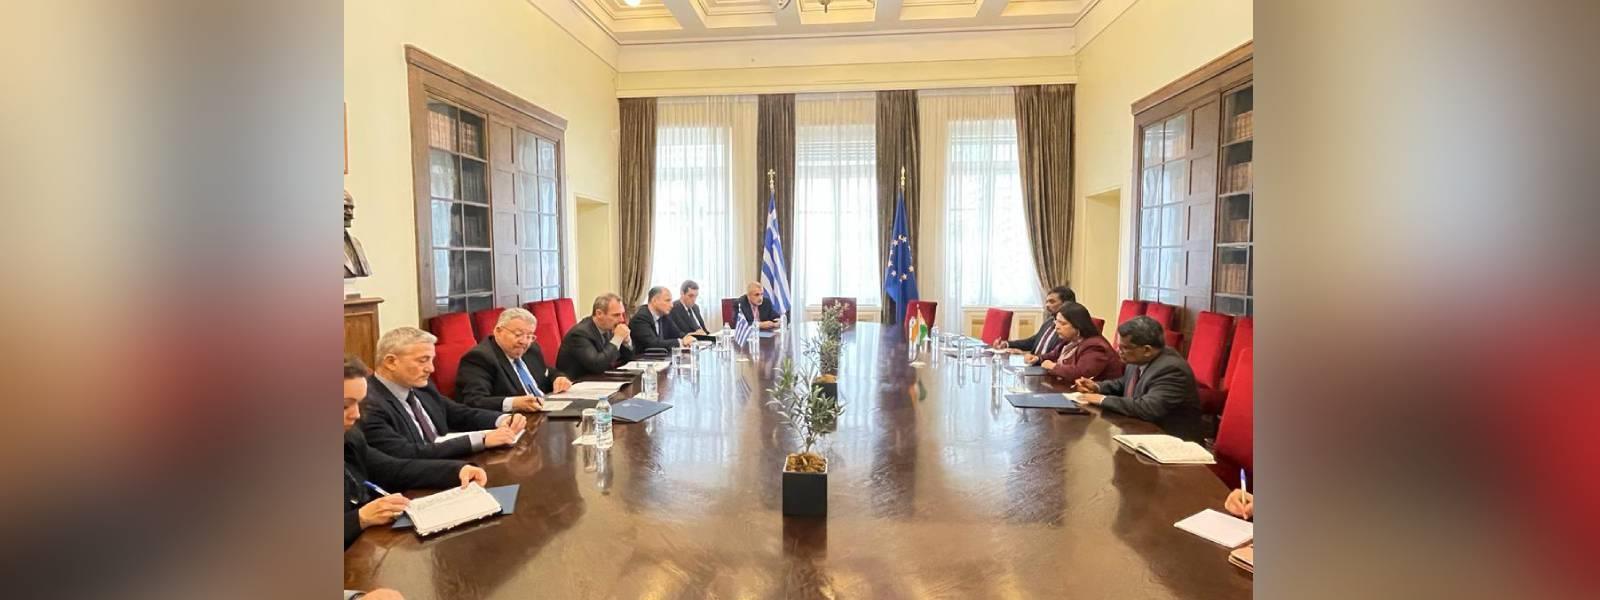 विदेश राज्य मंत्री श्रीमती मीनाक्षी लेखी की एथेंस में ग्रीस के उप विदेश मंत्री महामहिम श्री एंड्रियास कटानियोटिस से मुलाकात 